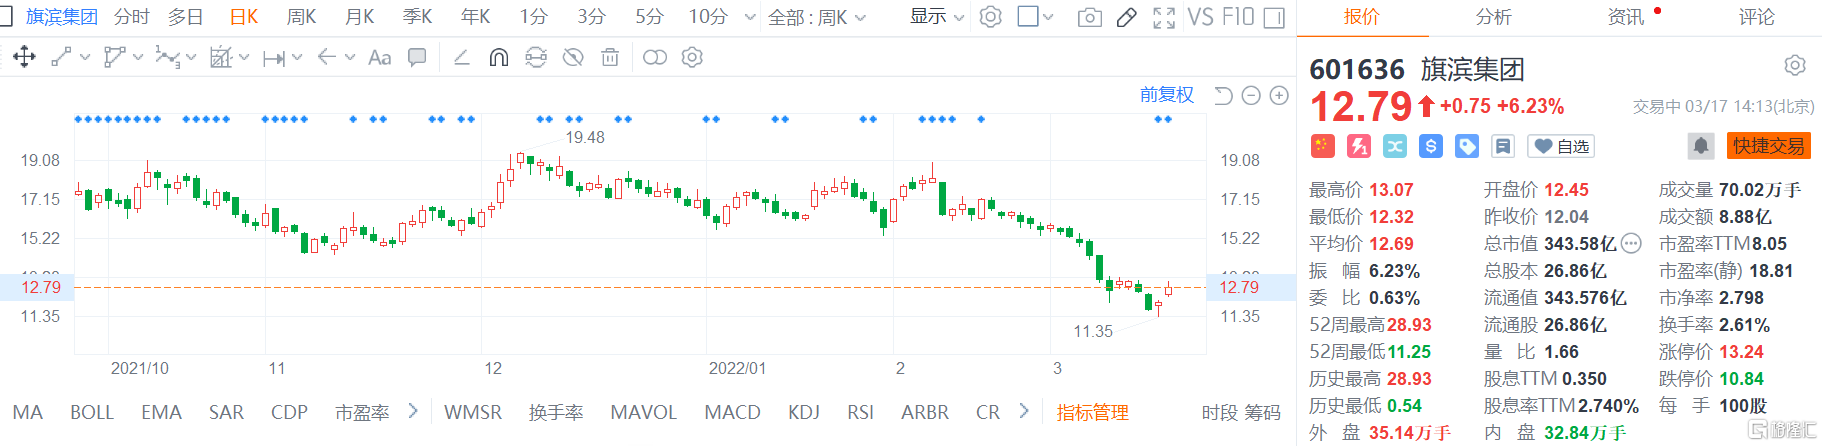 旗滨集团(601636.SH)股价继续回升 现报12.79元涨幅6.23%